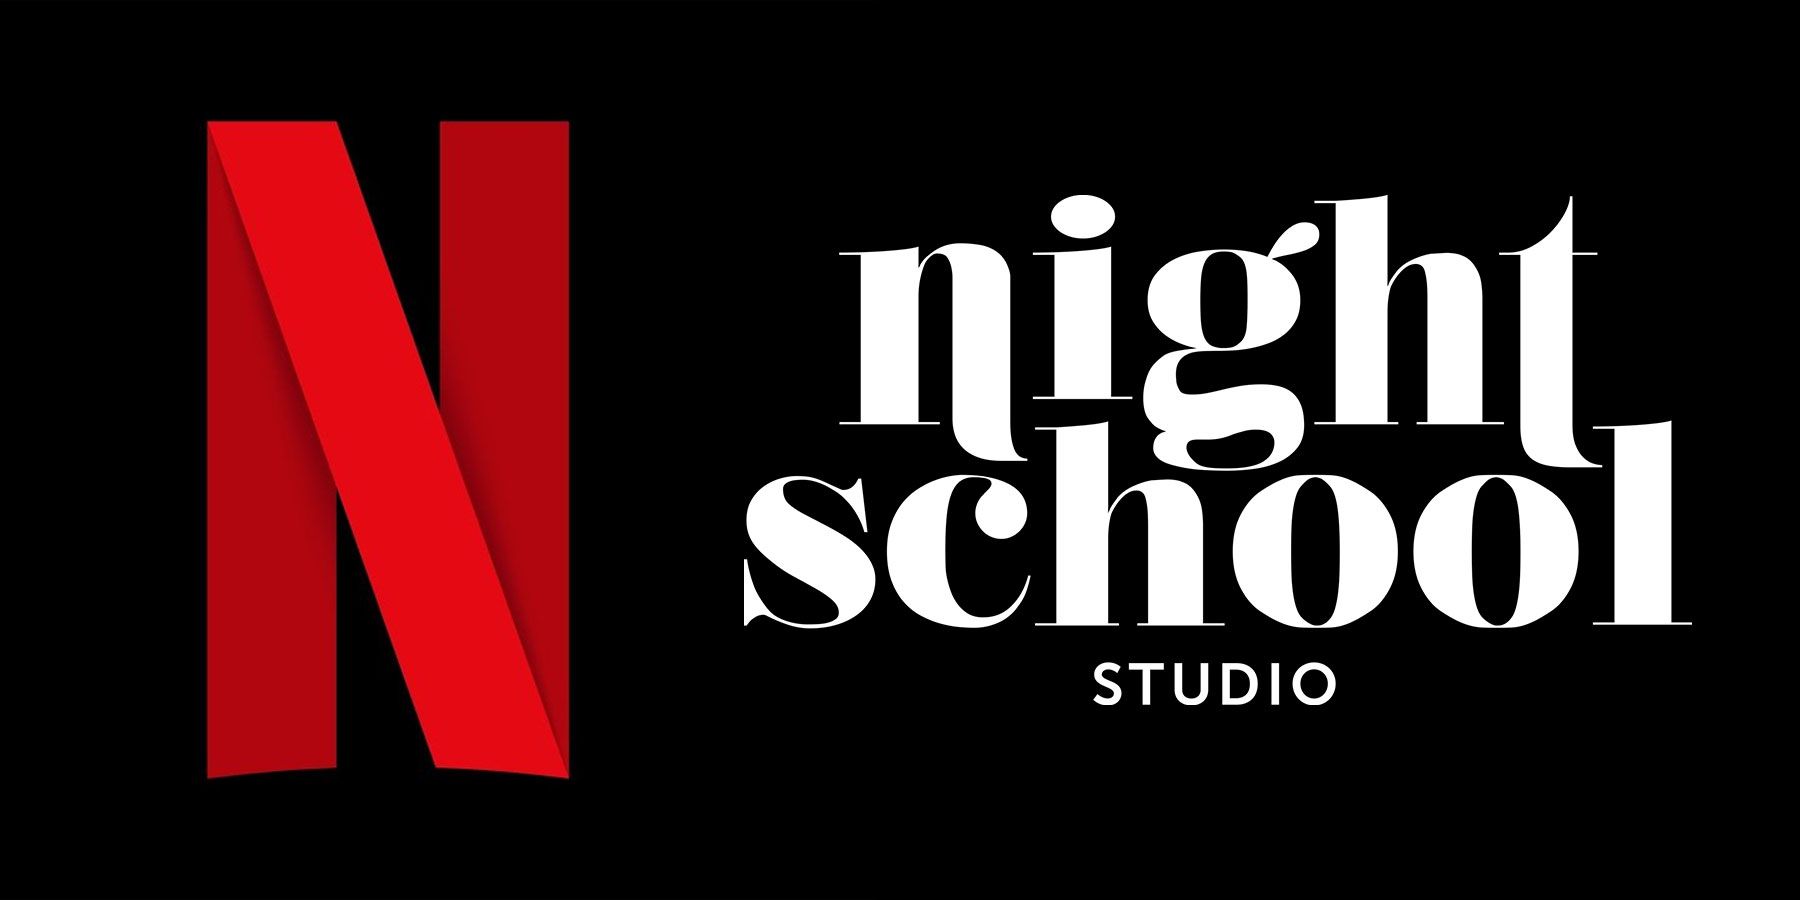 Netflix adquiere Night School Studio es una buena señal para sus ambiciones de transmisión